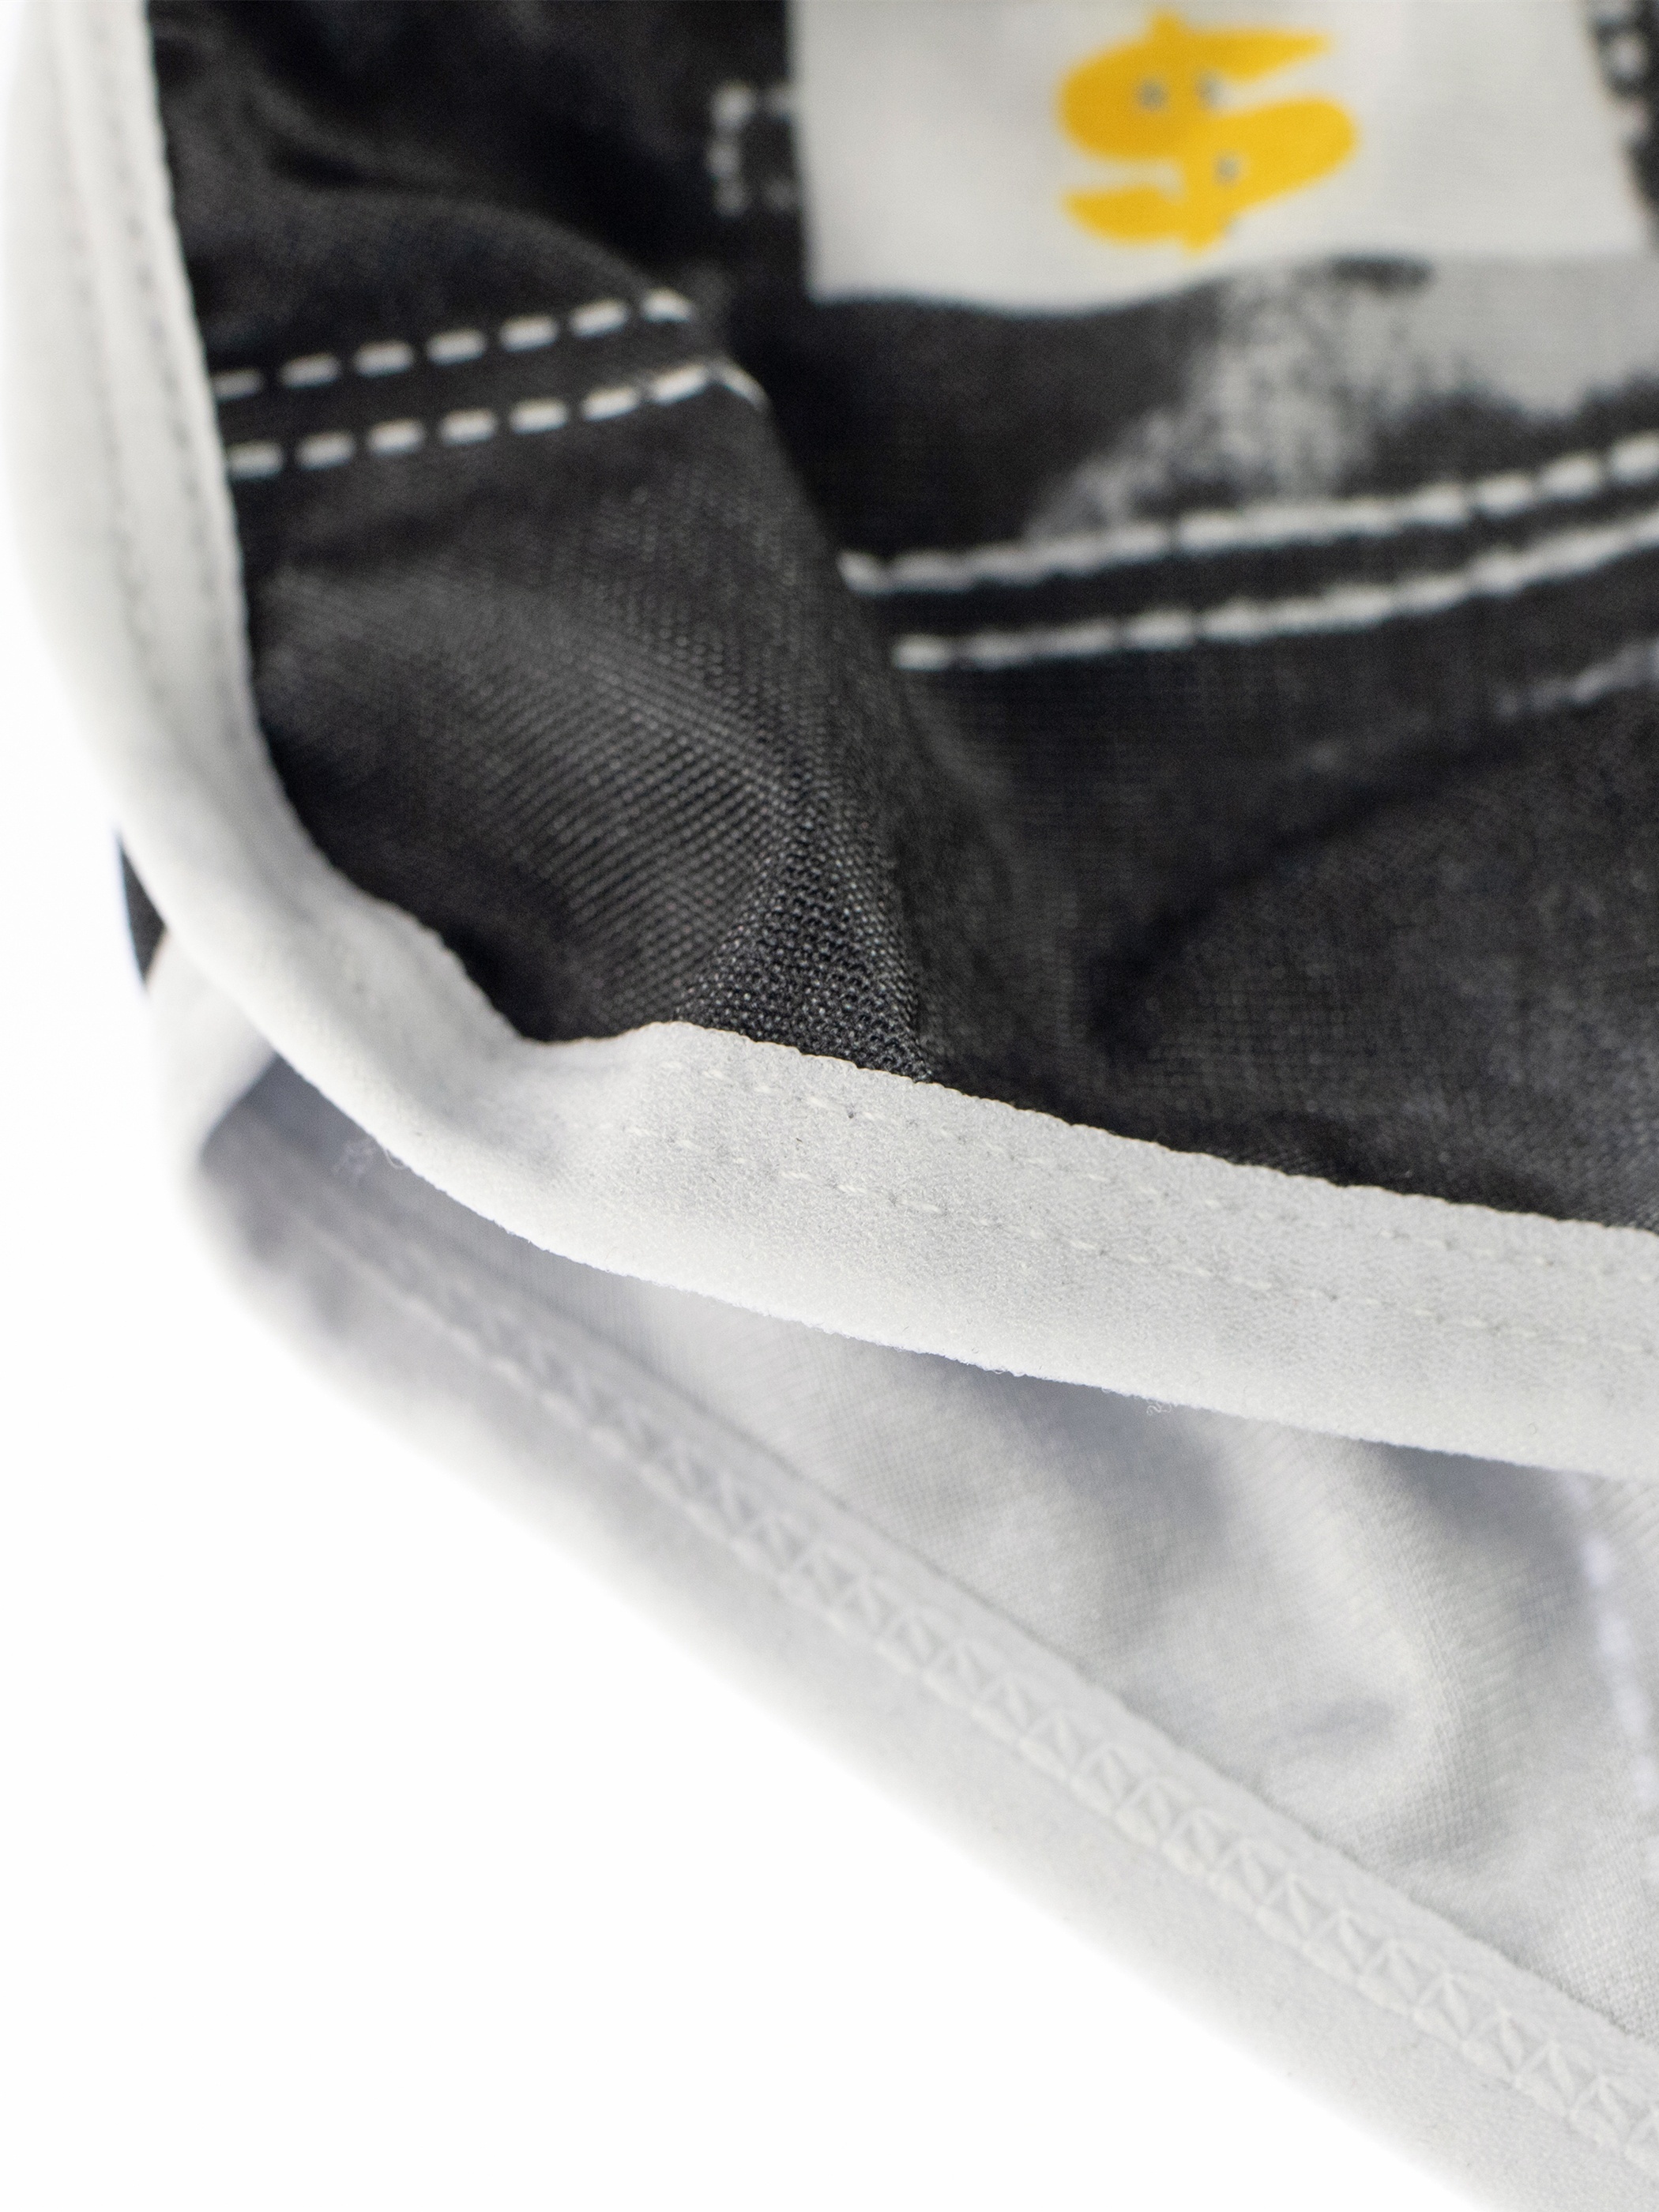 Men's Fashion Sexy Imitation Denim Print Underwear Briefs - Temu